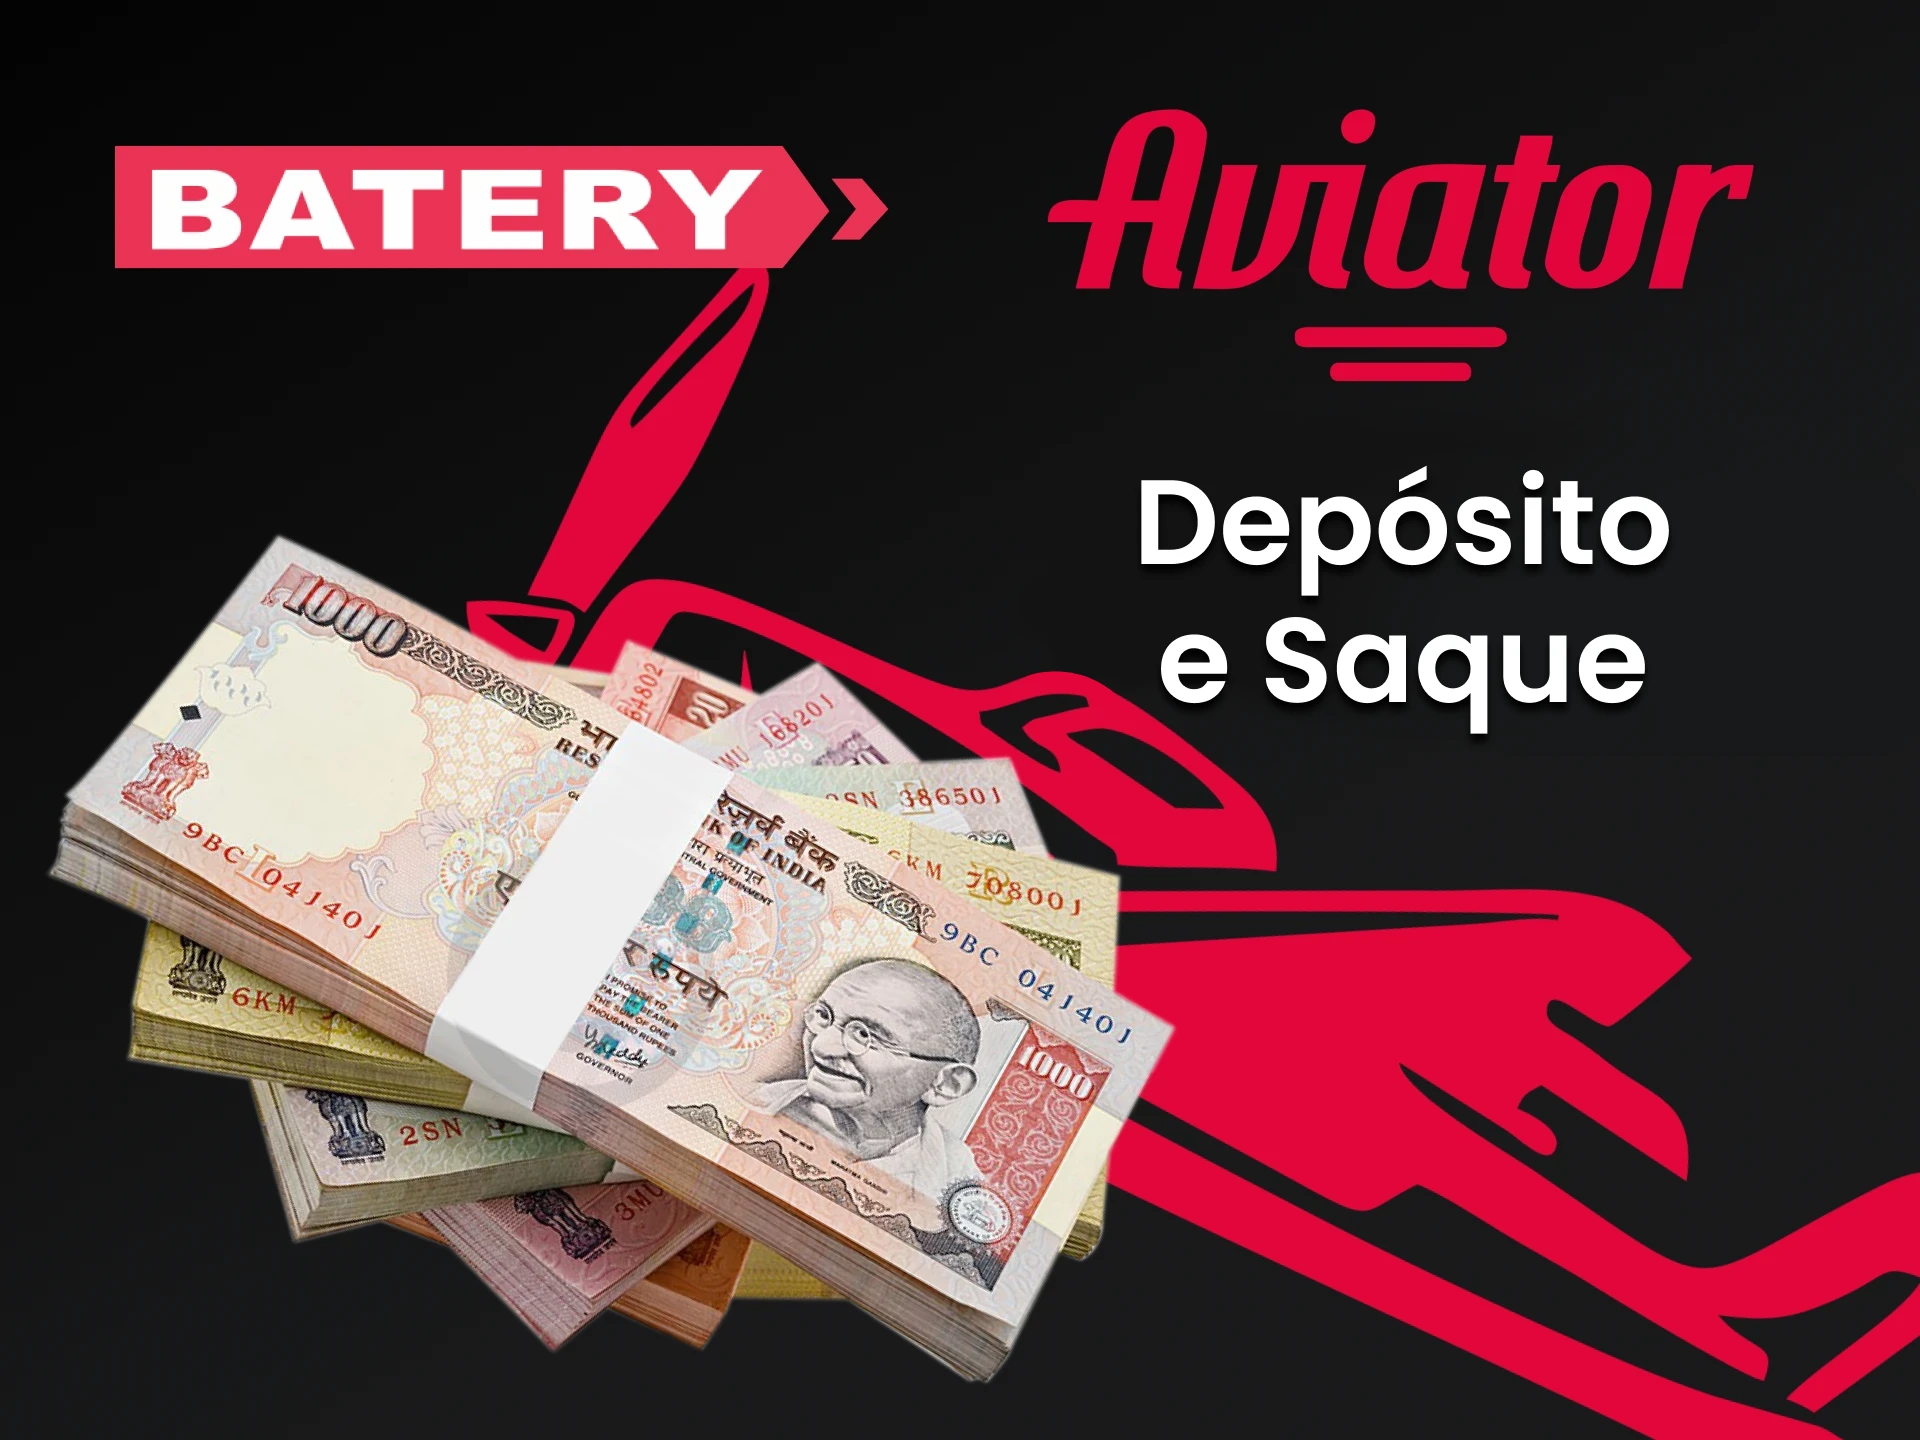 Use o método de transação conveniente da Batery for Aviator.